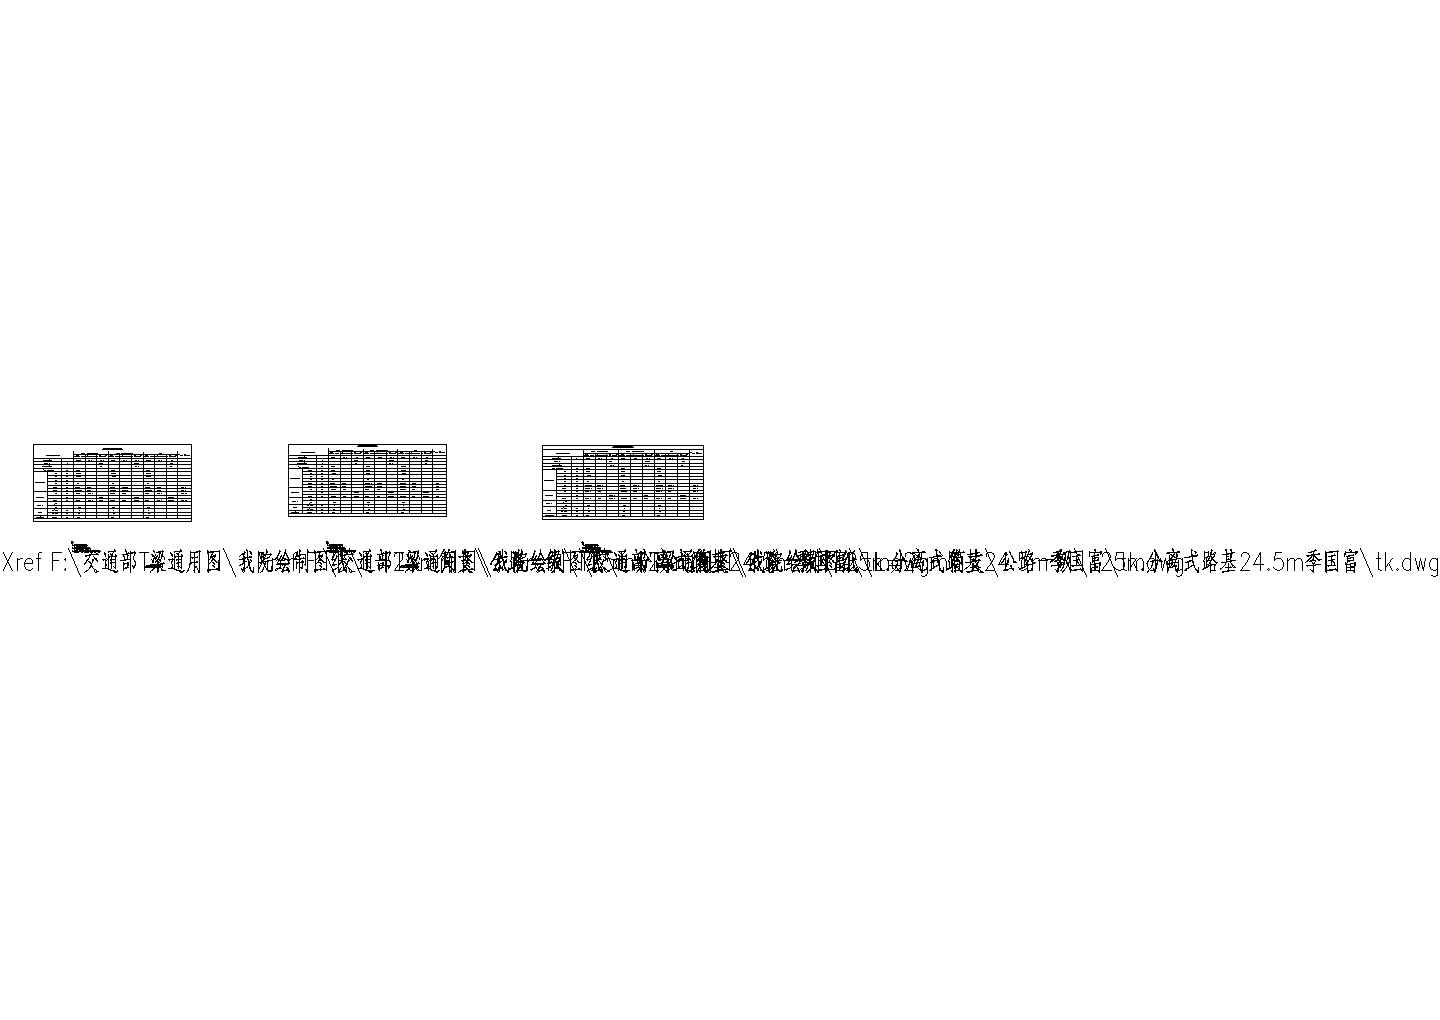 装配式预应力混凝土T梁桥（先简支后结构连续）上部构造通用图[跨径：25m，公路-Ⅱ级,桥面宽度：12]